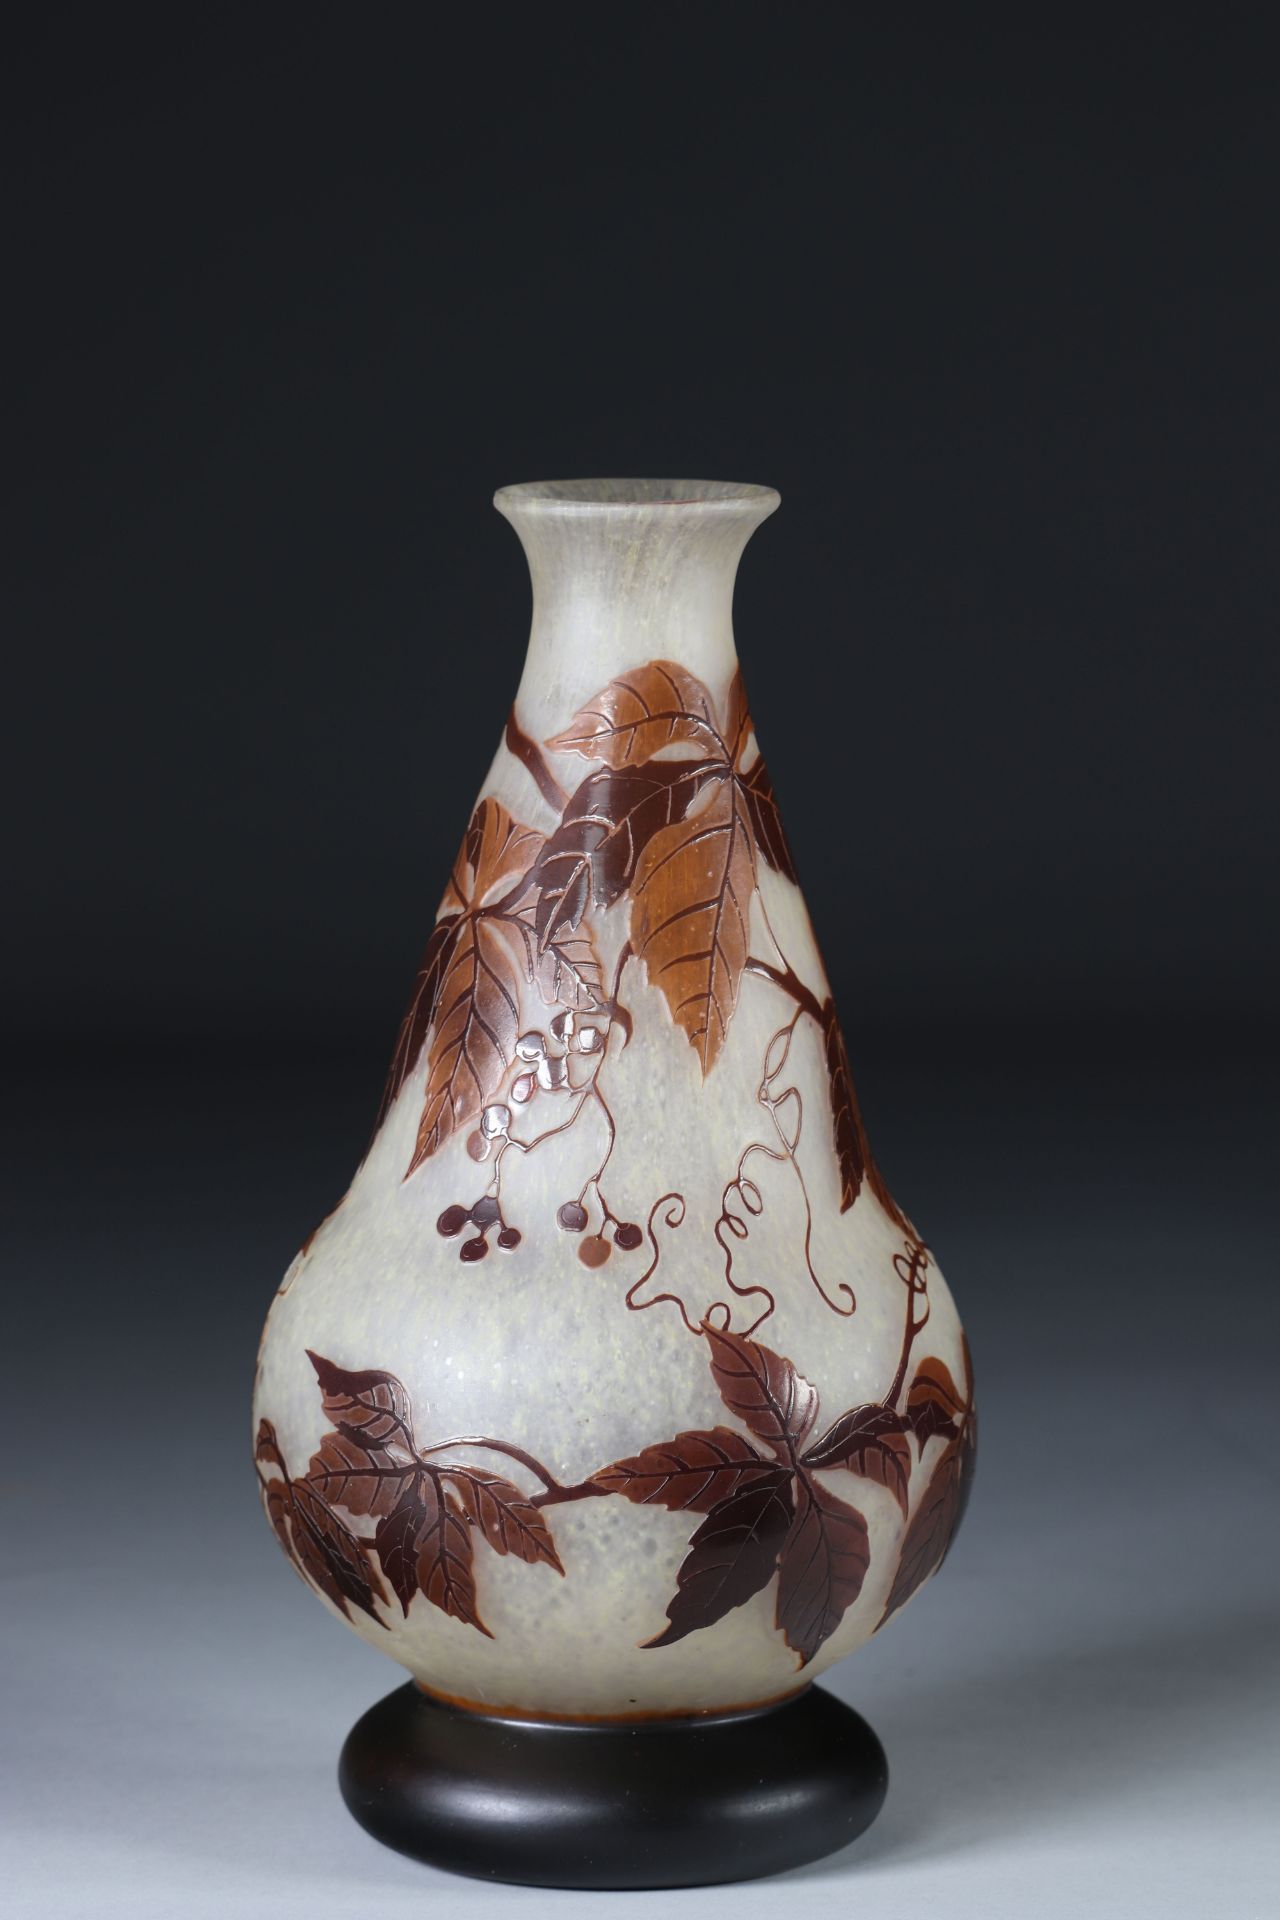 Andre Delatte etched glass vase in floral design cameo - Image 2 of 3